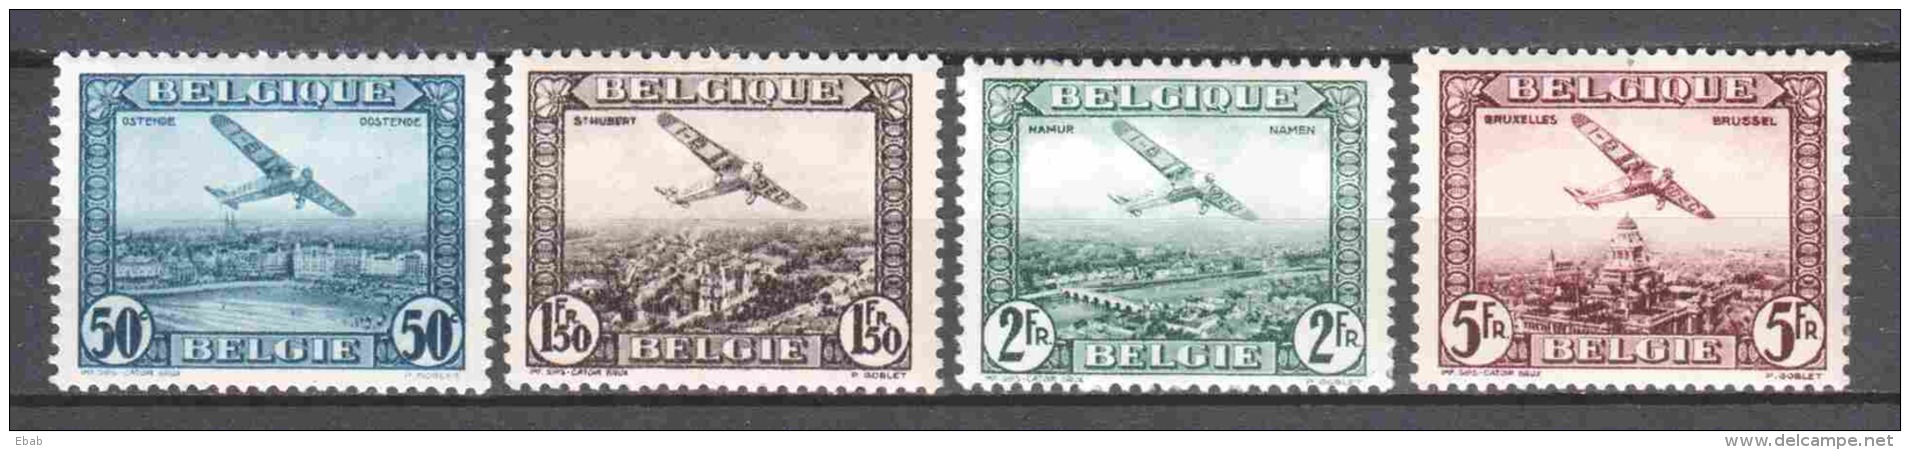 Belgium 1930 Mi 280-283 MH AIRPLANES - Unused Stamps